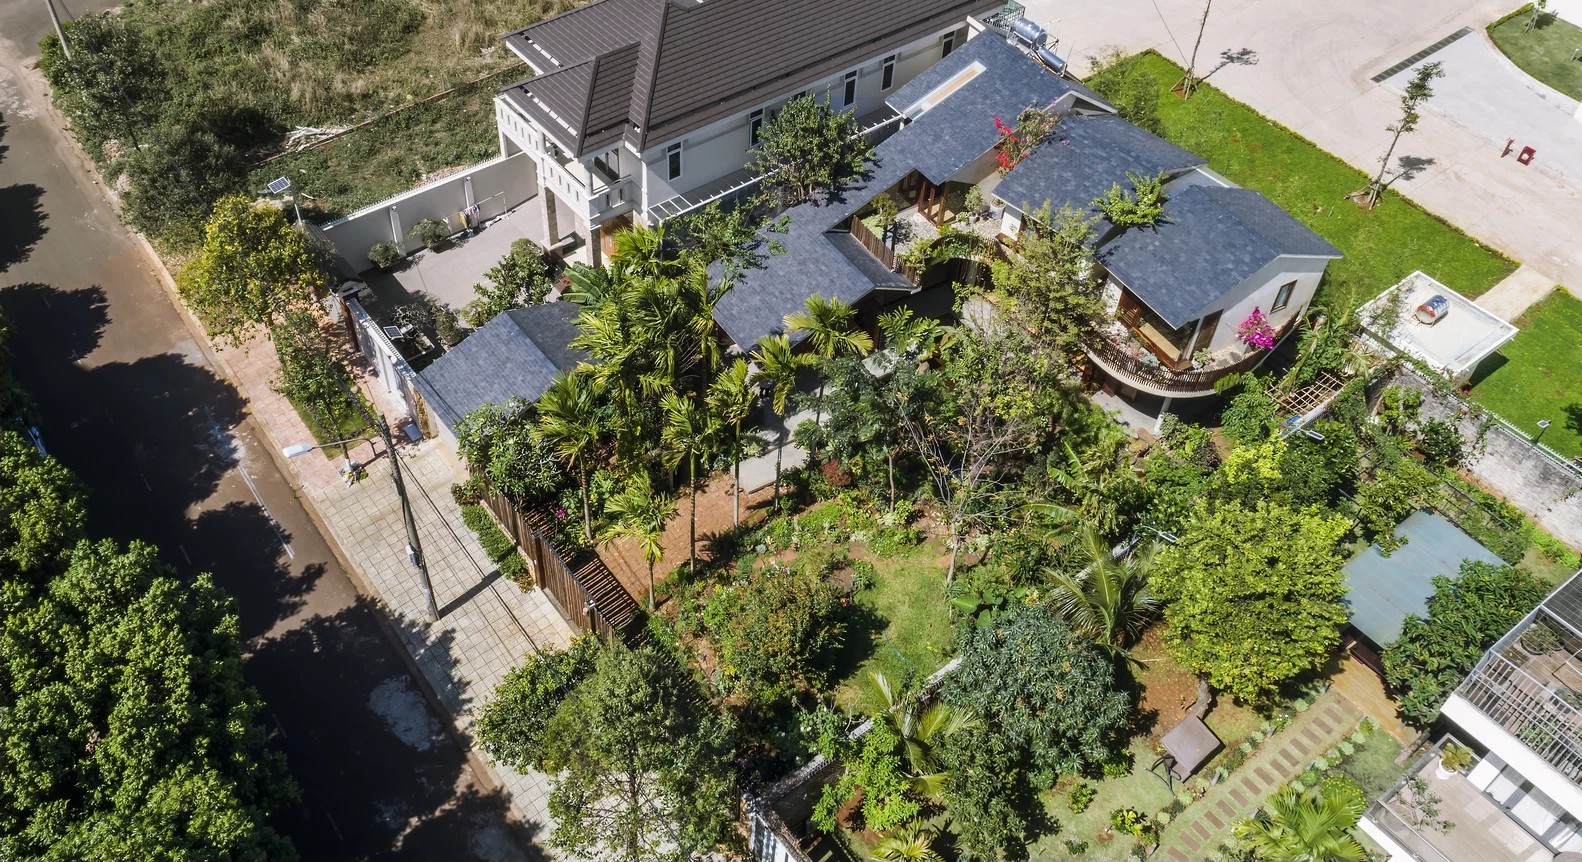 
Từ trên cao nhìn xuống, căn nhà được bao phủ bởi mảng thực vật xanh tươi. Đây là không gian sống xanh đáng mơ ước của bao người
